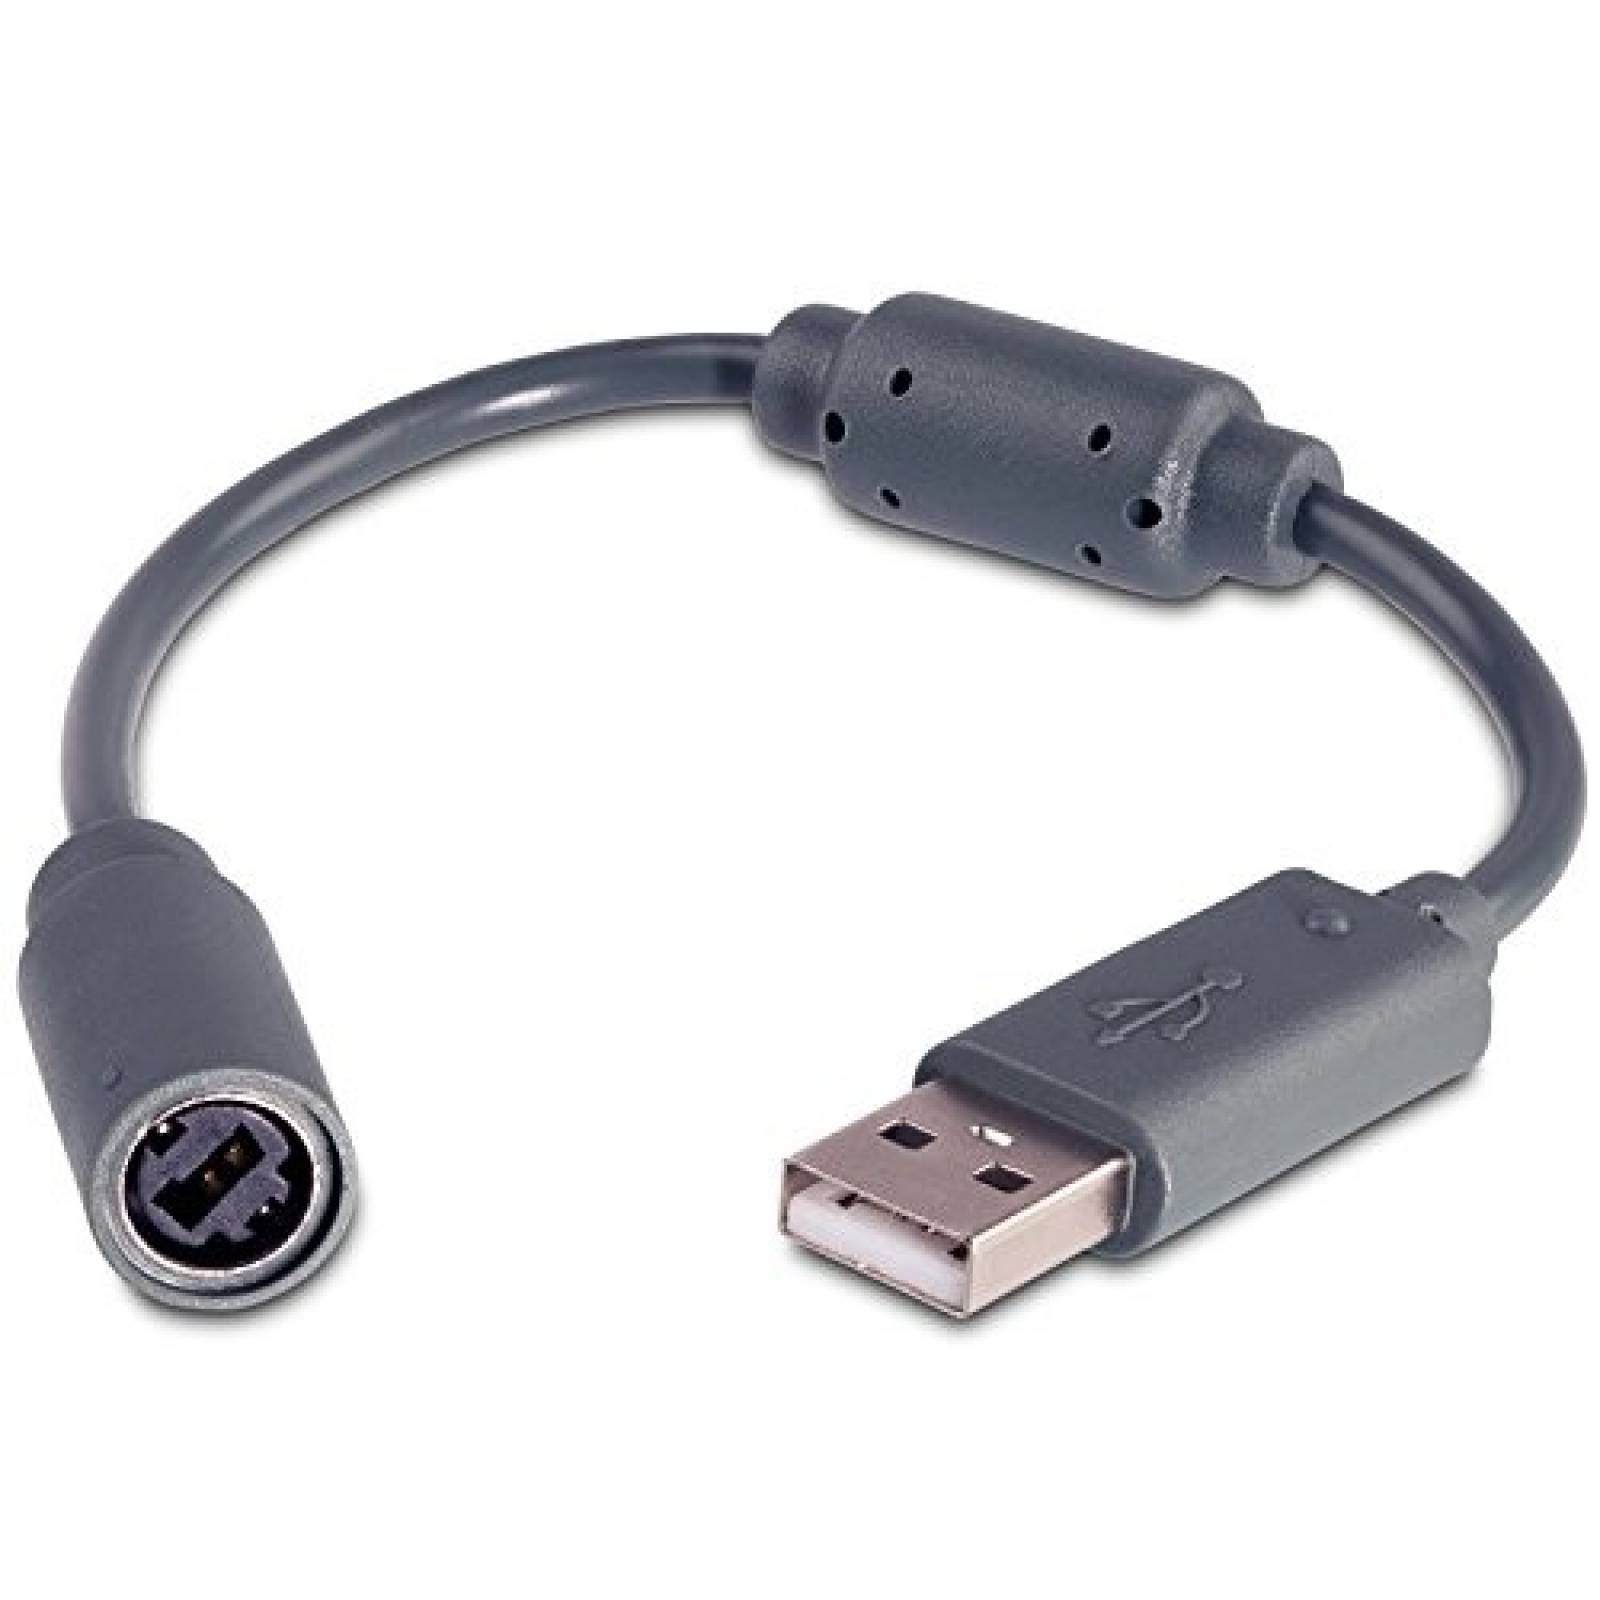 Adaptador USB Fosmon para Xbox 360 controladores -Gris